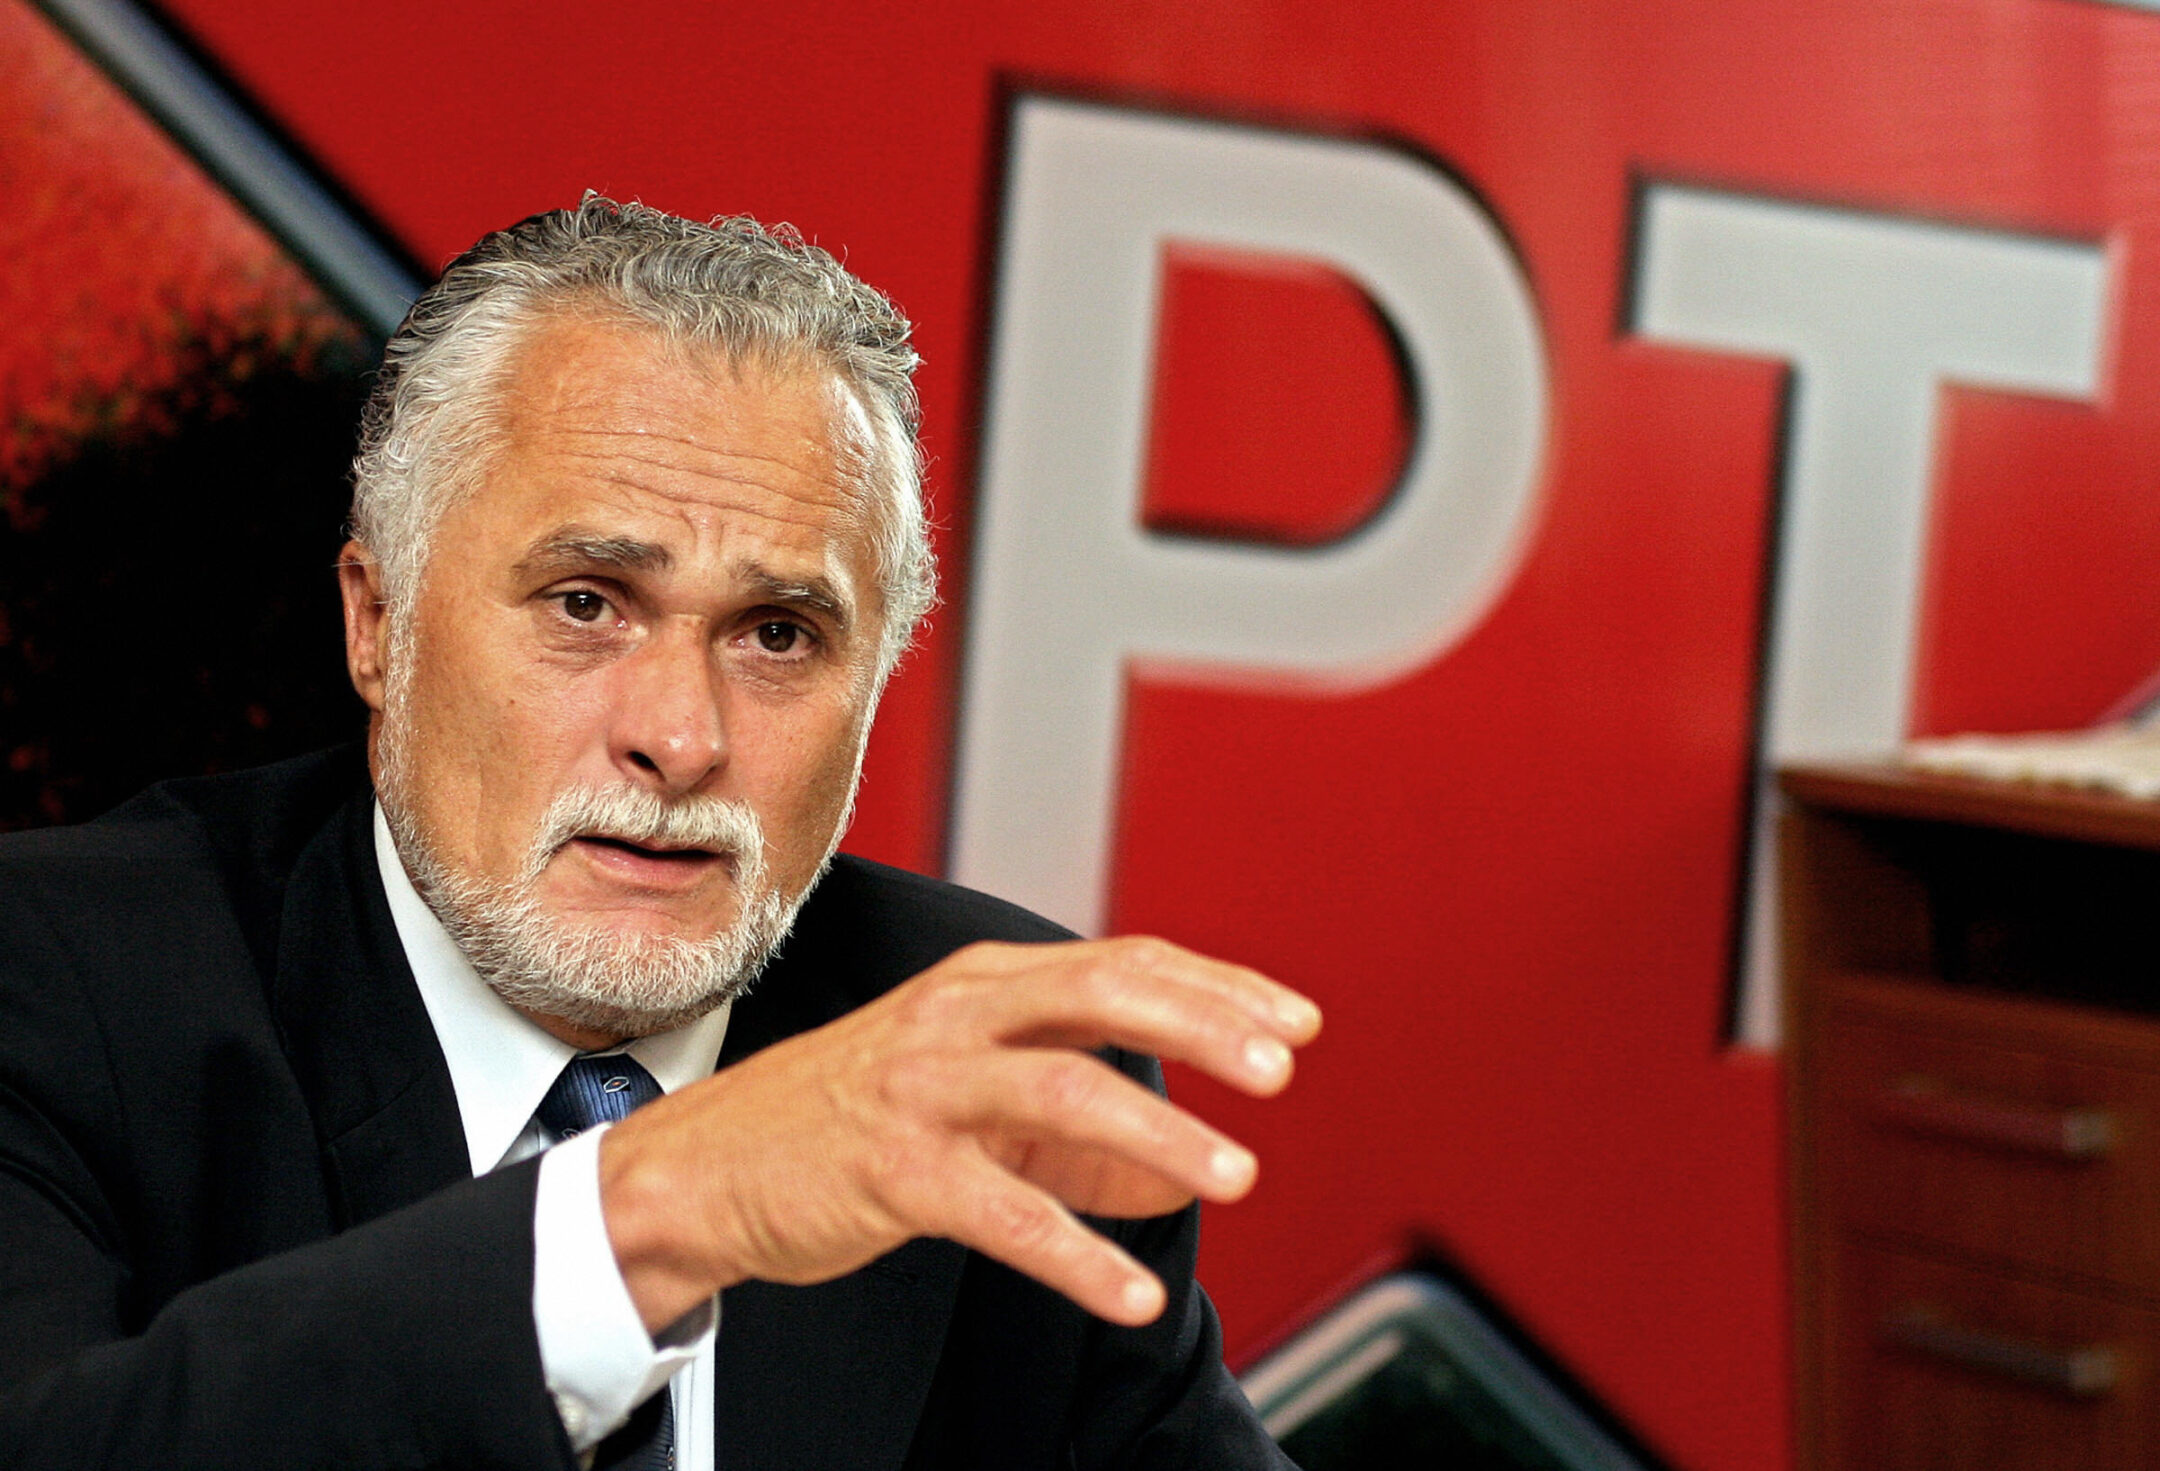 פוליטיקאי ברזילאי שמאלני בעל השפעה מביע עניין בחרם על "חברות יהודיות מסוימות"